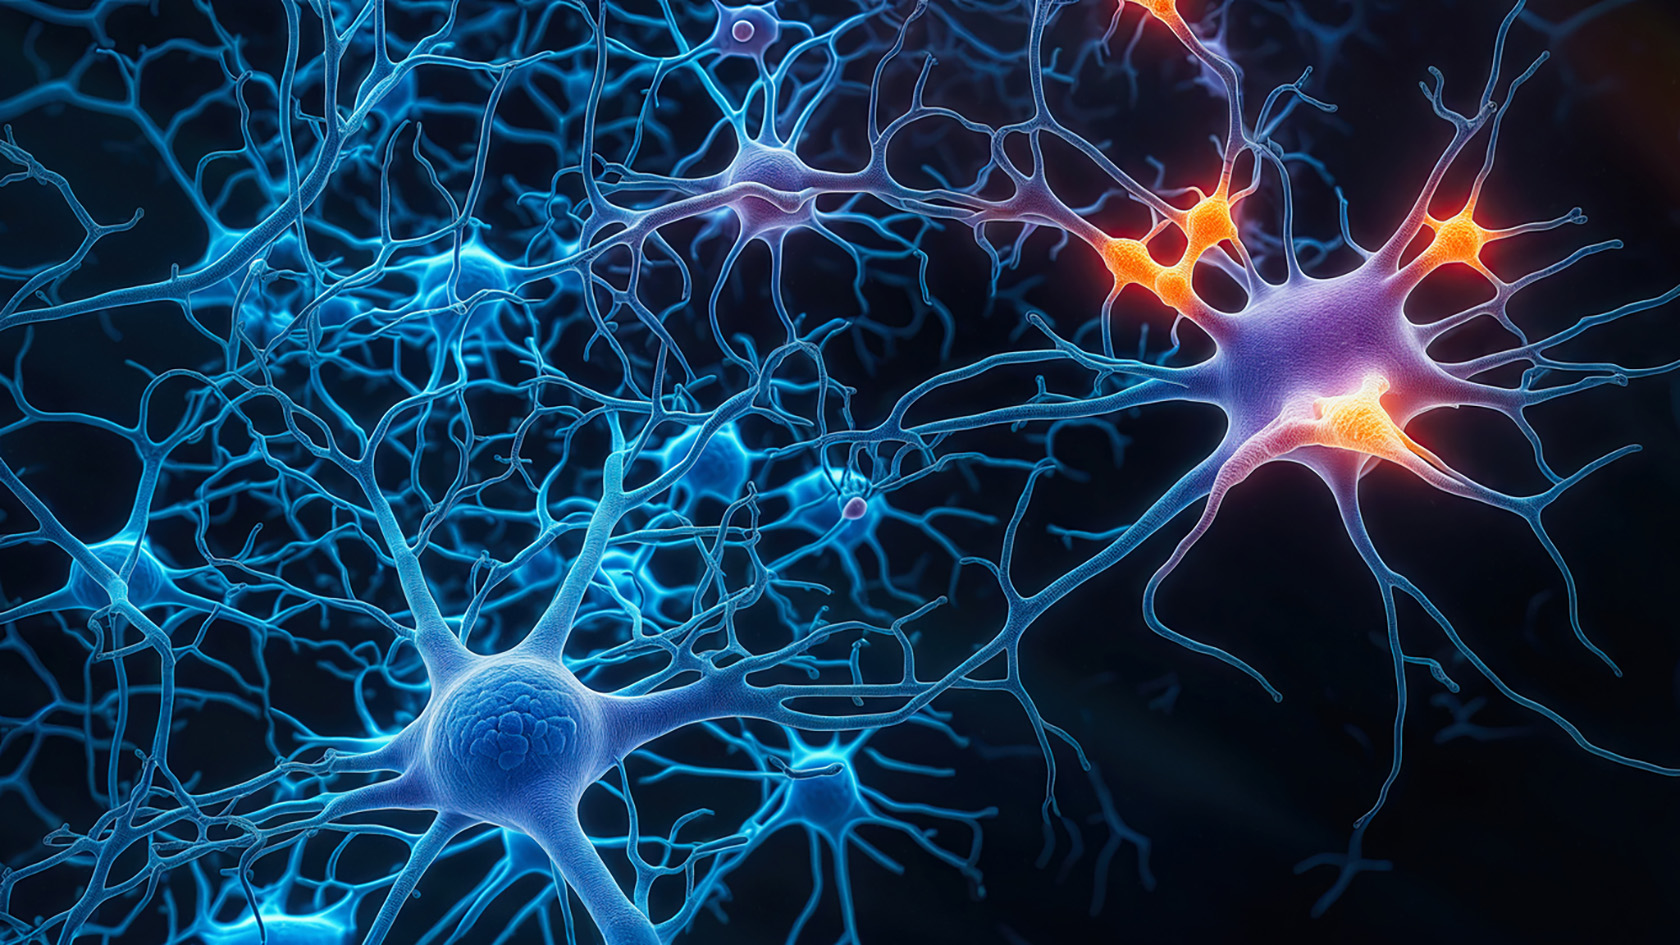 Künstlerische Darstellung von Nervenzellen im Gehirn